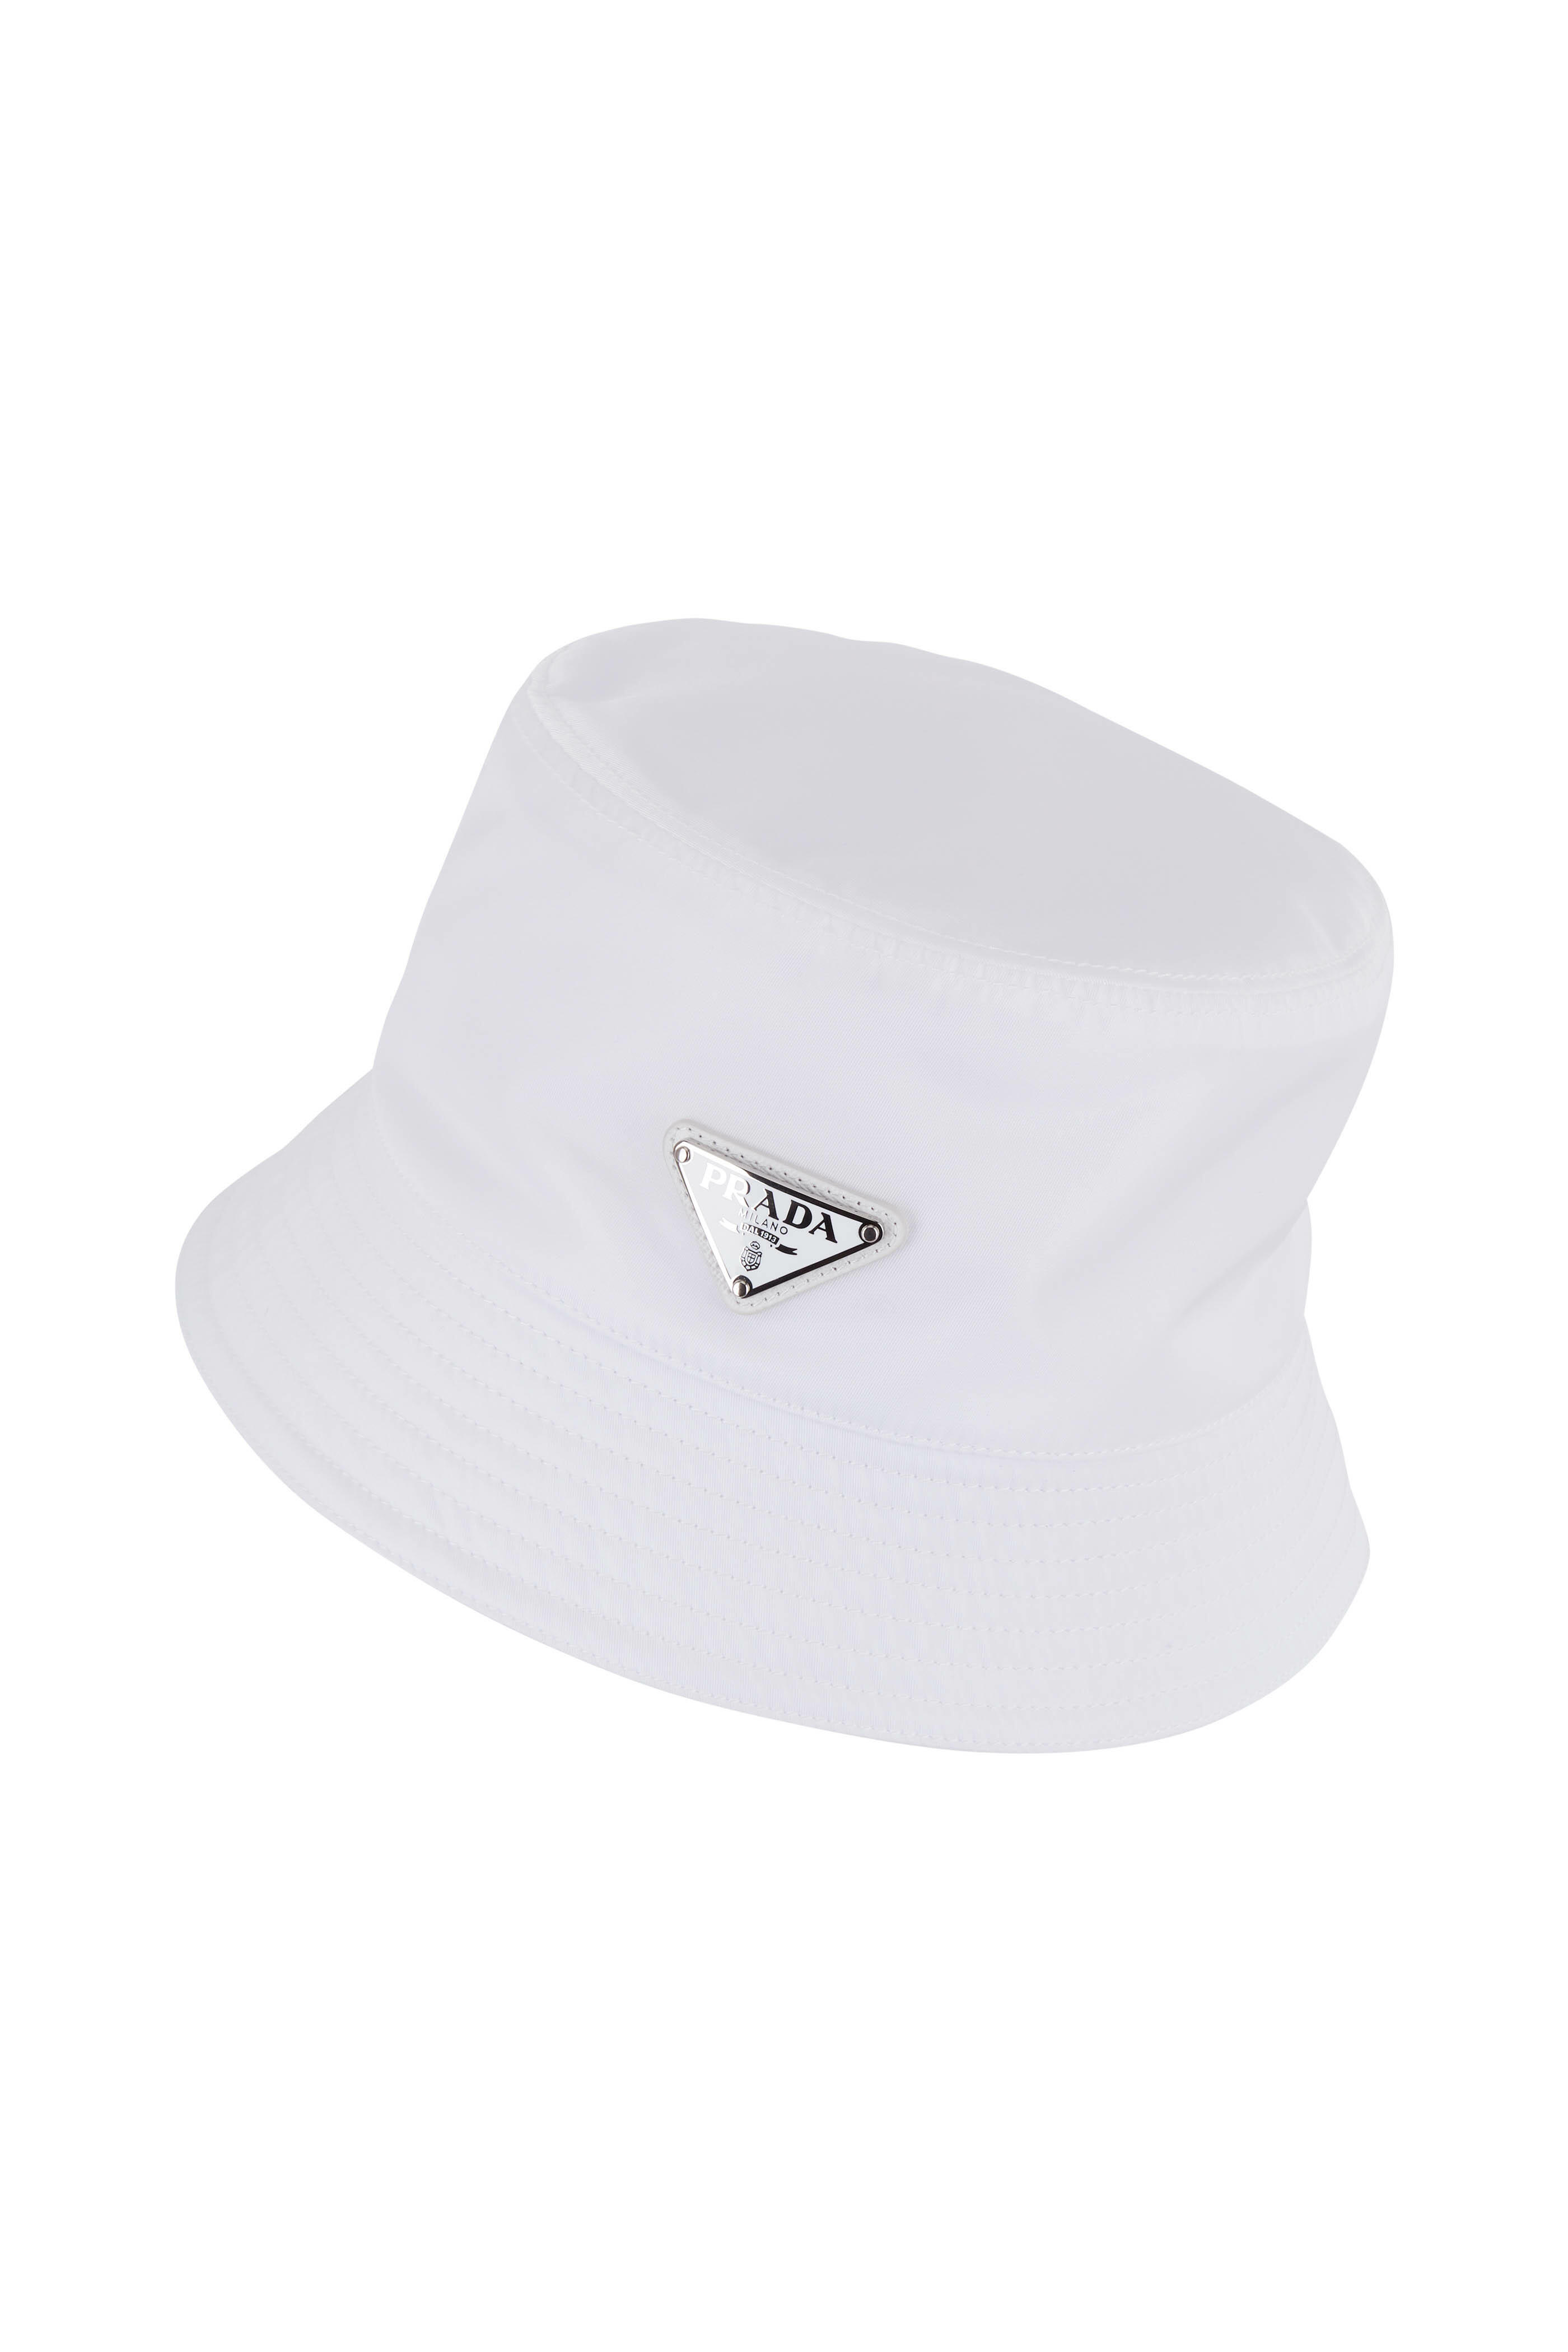 Prada - White Nylon Logo Bucket Hat | Mitchell Stores